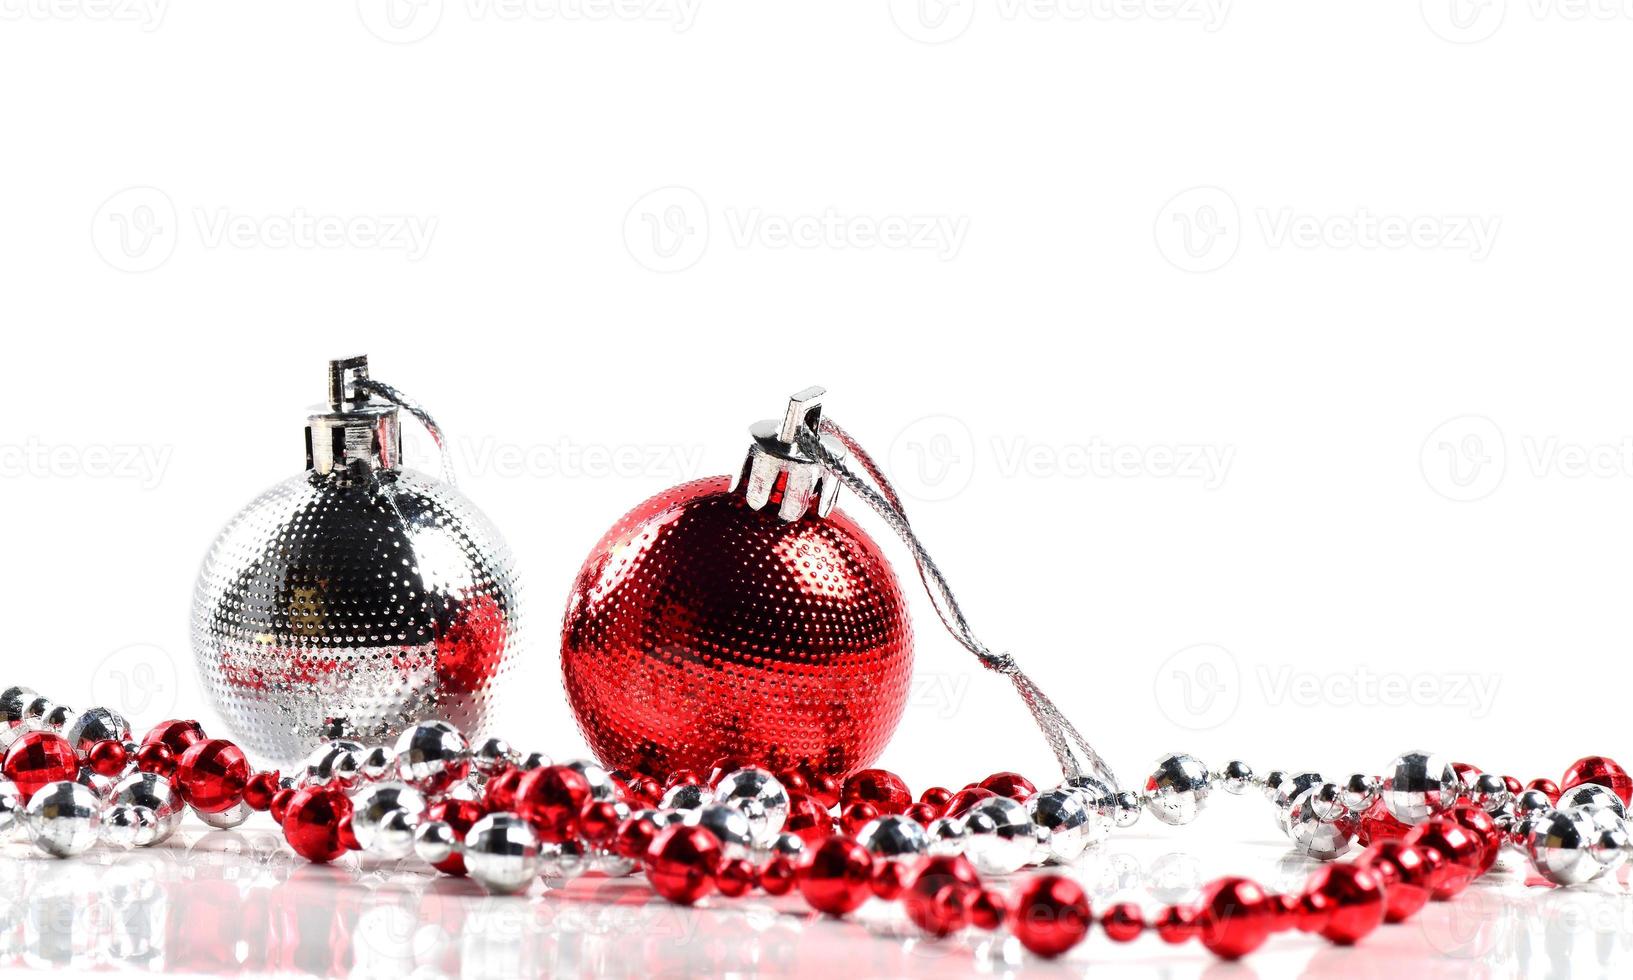 palle di Natale con ornamenti su sfondo bianco. foto